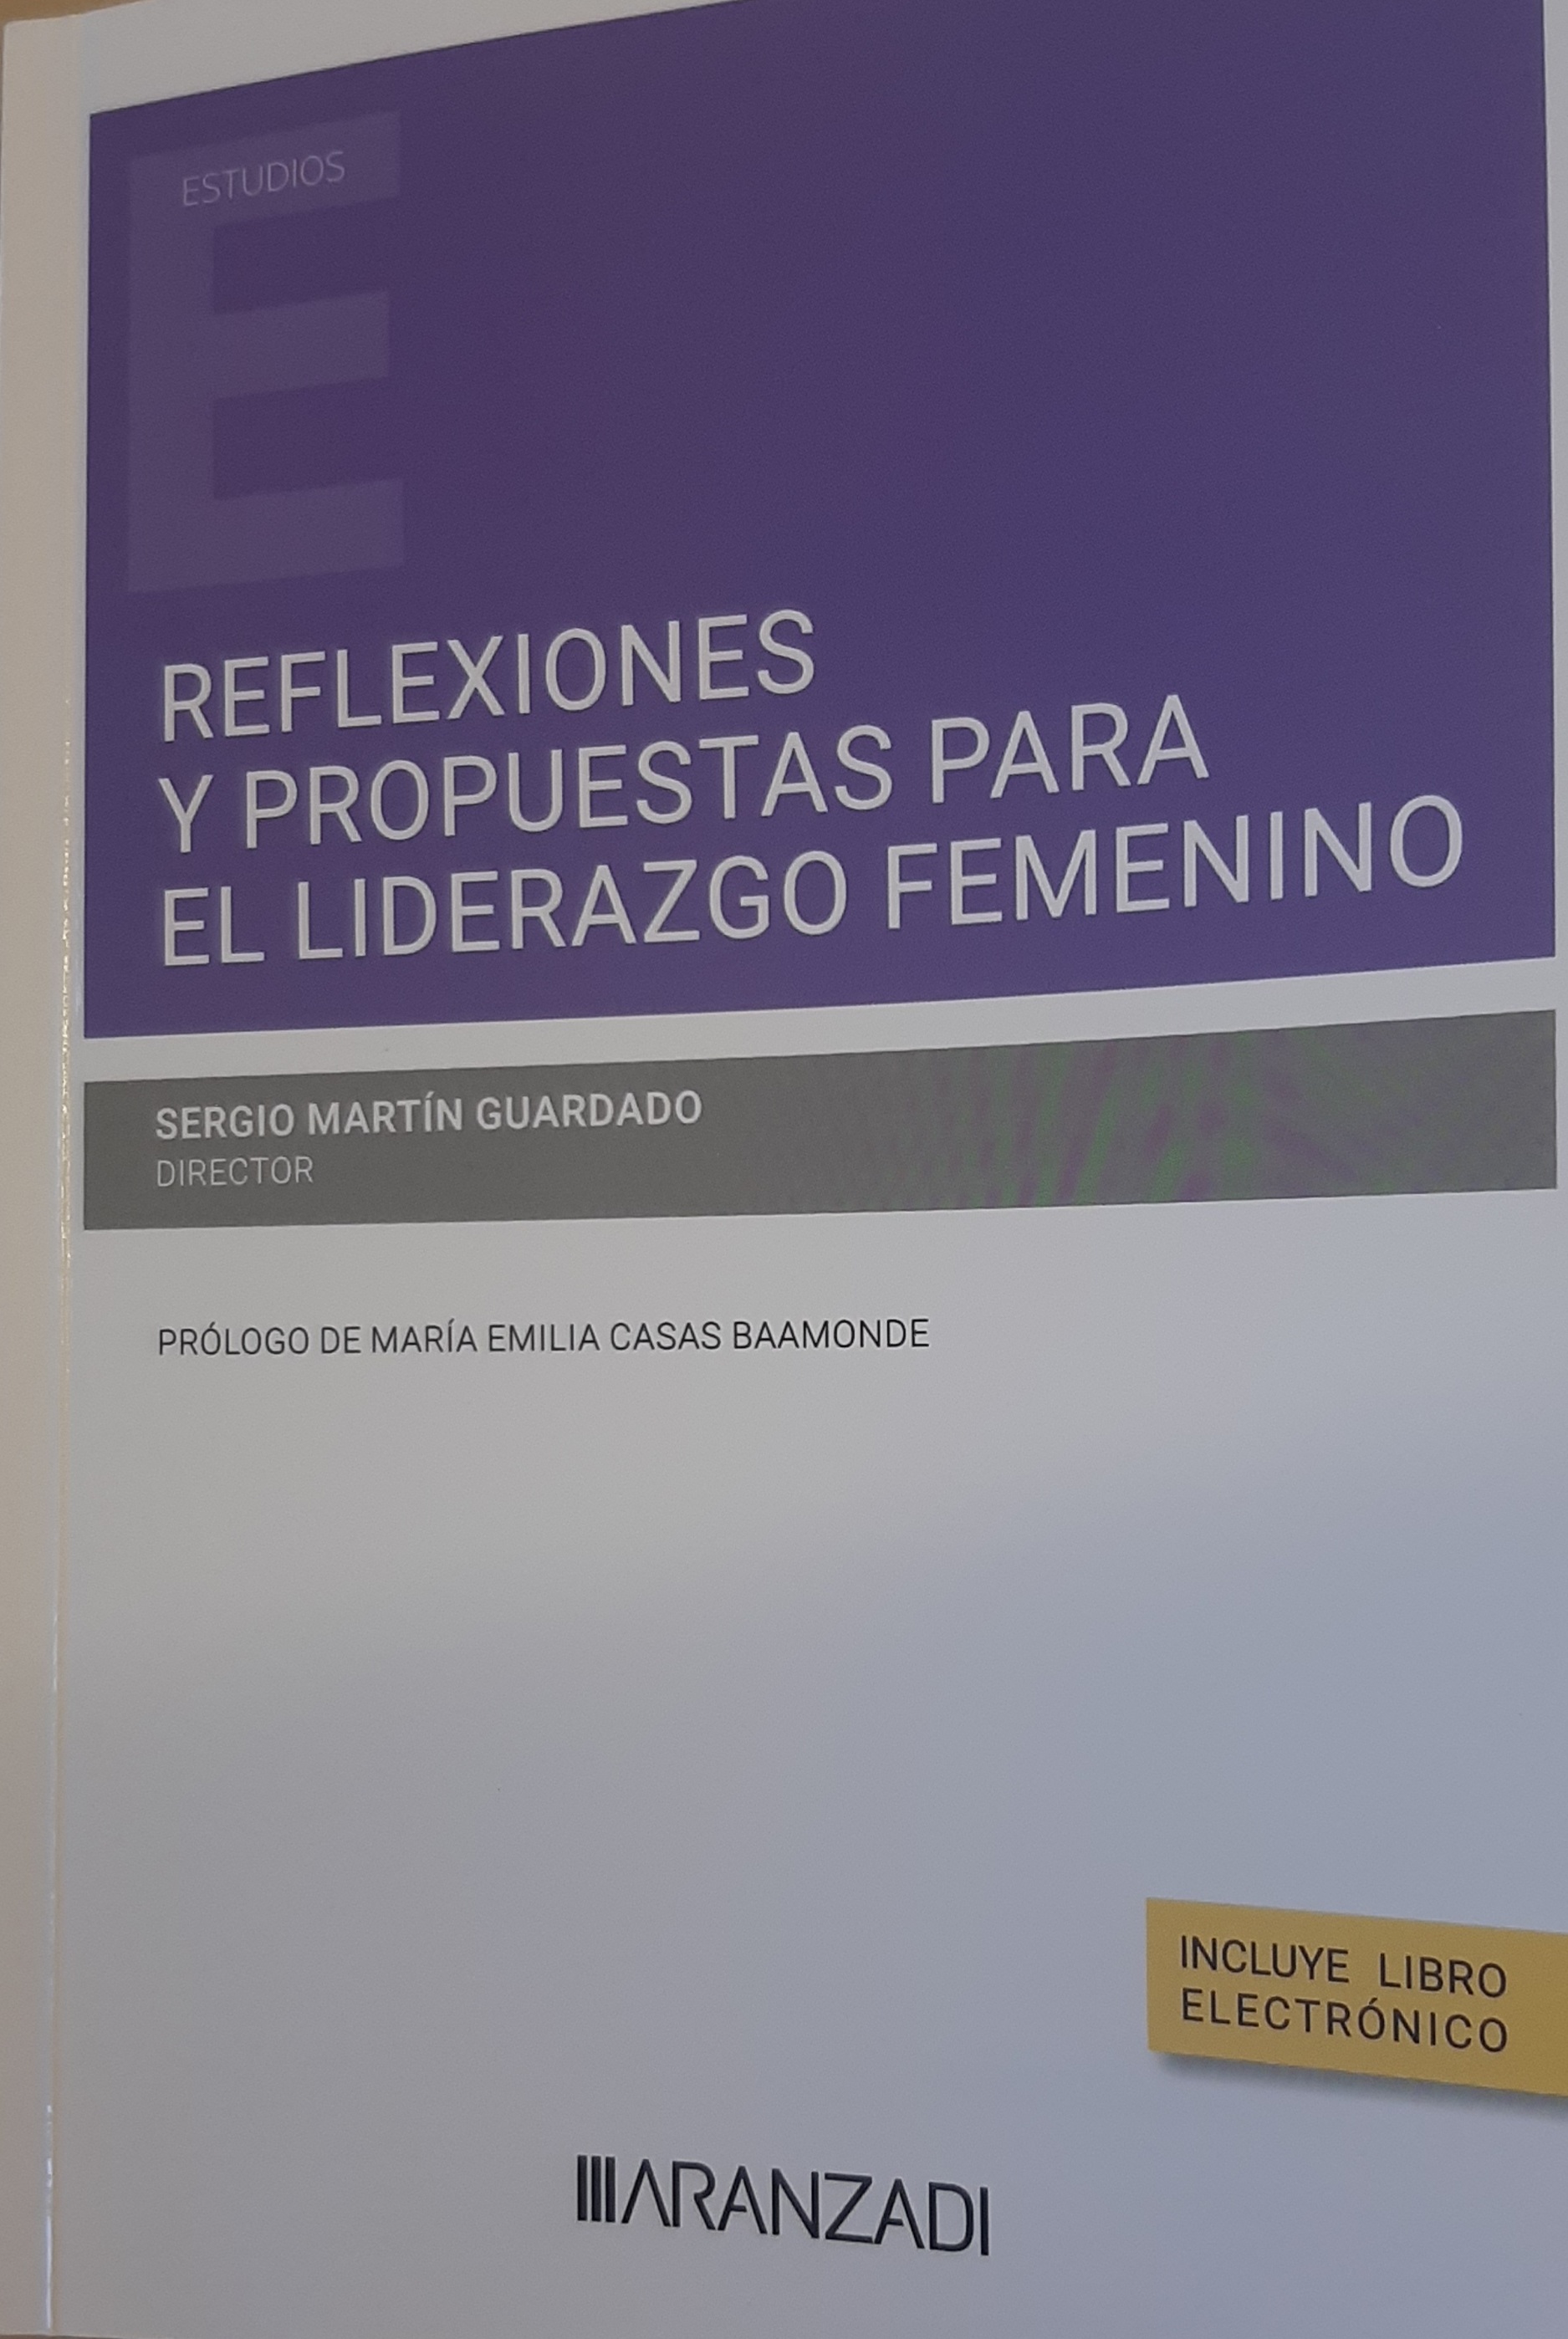 Imagen de portada del libro Reflexiones y propuestas para el liderazgo femenino